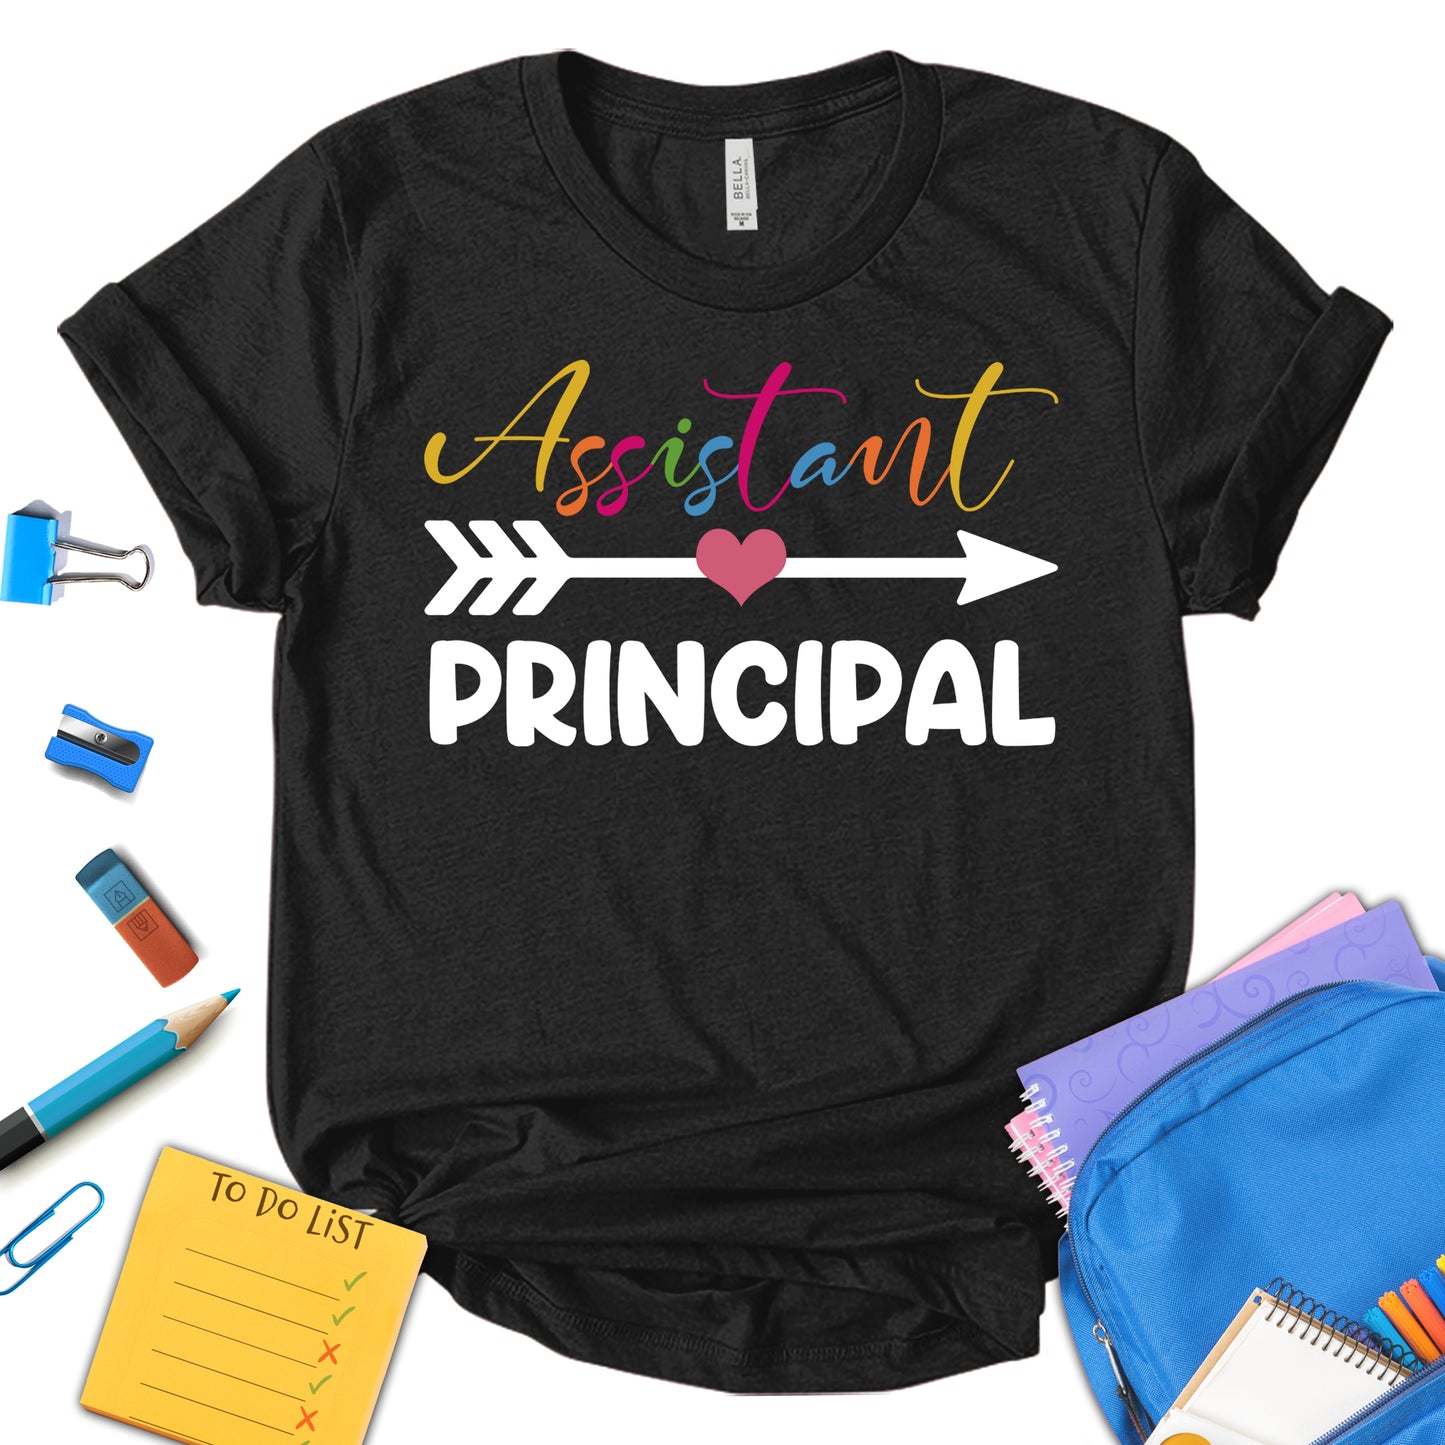 Assistant Principal Shirt, Assistant School Principal Shirt, Funny Teacher Shirt, Teacher Appreciation Shirt, Teacher Shirt, School Shirt, Motivation Shirt, Gift For Teacher, Unisex T-shirt